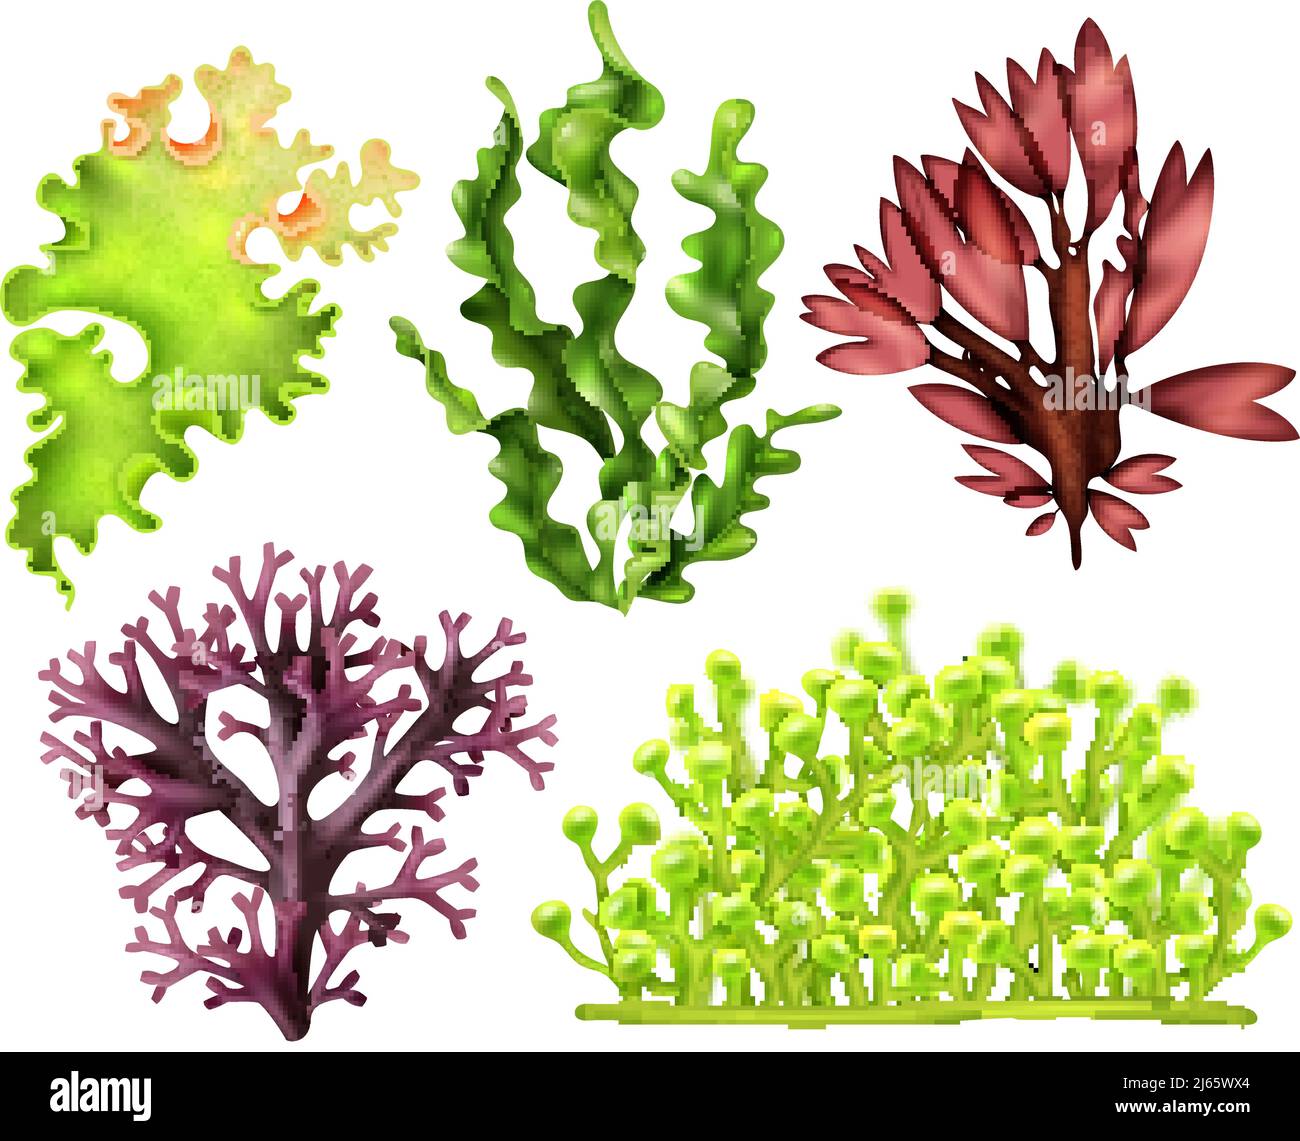 Insieme di erbacce marine realistiche, tra cui l'illustrazione vettoriale isolata di alghe alimentari rosse, marroni e verdi Illustrazione Vettoriale